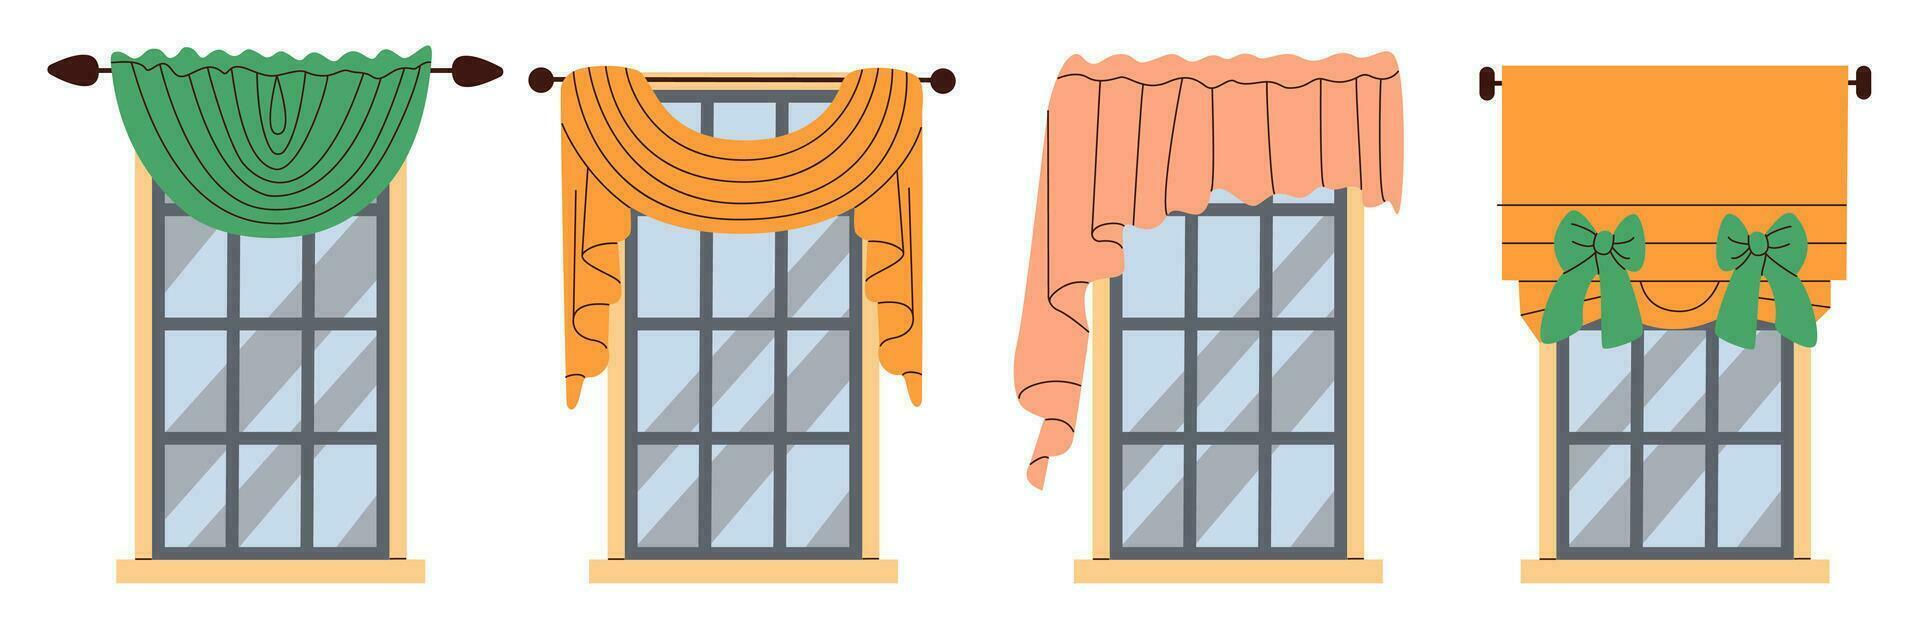 Hem textil- uppsättning. dekorativ gardiner för interiör design. mysigt textilier för Hem dekor. platt vektor illustration.